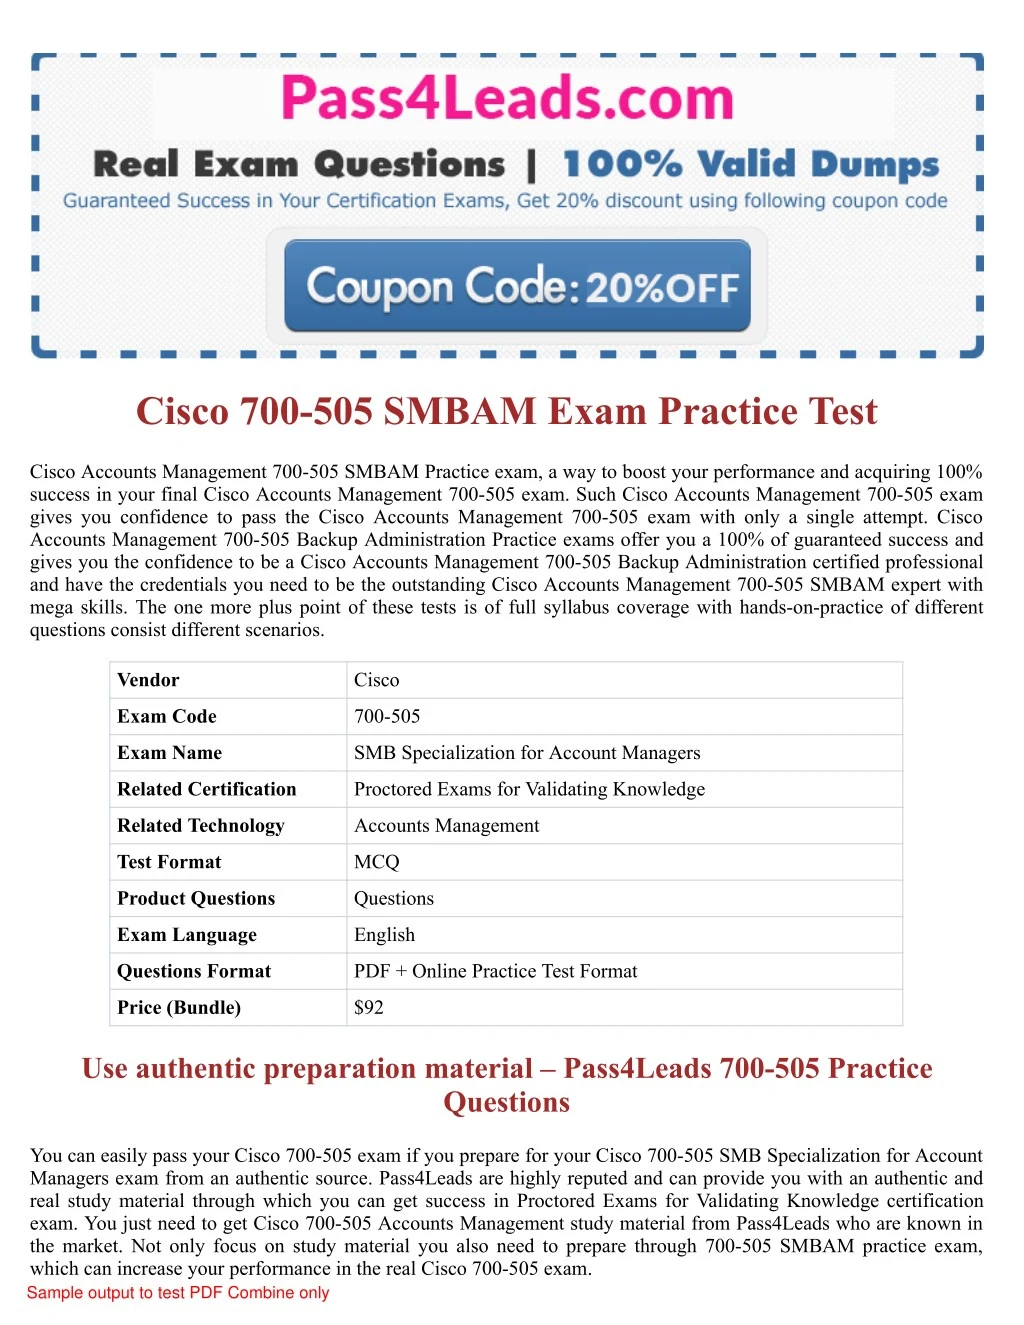 cisco 700 505 smbam exam practice test